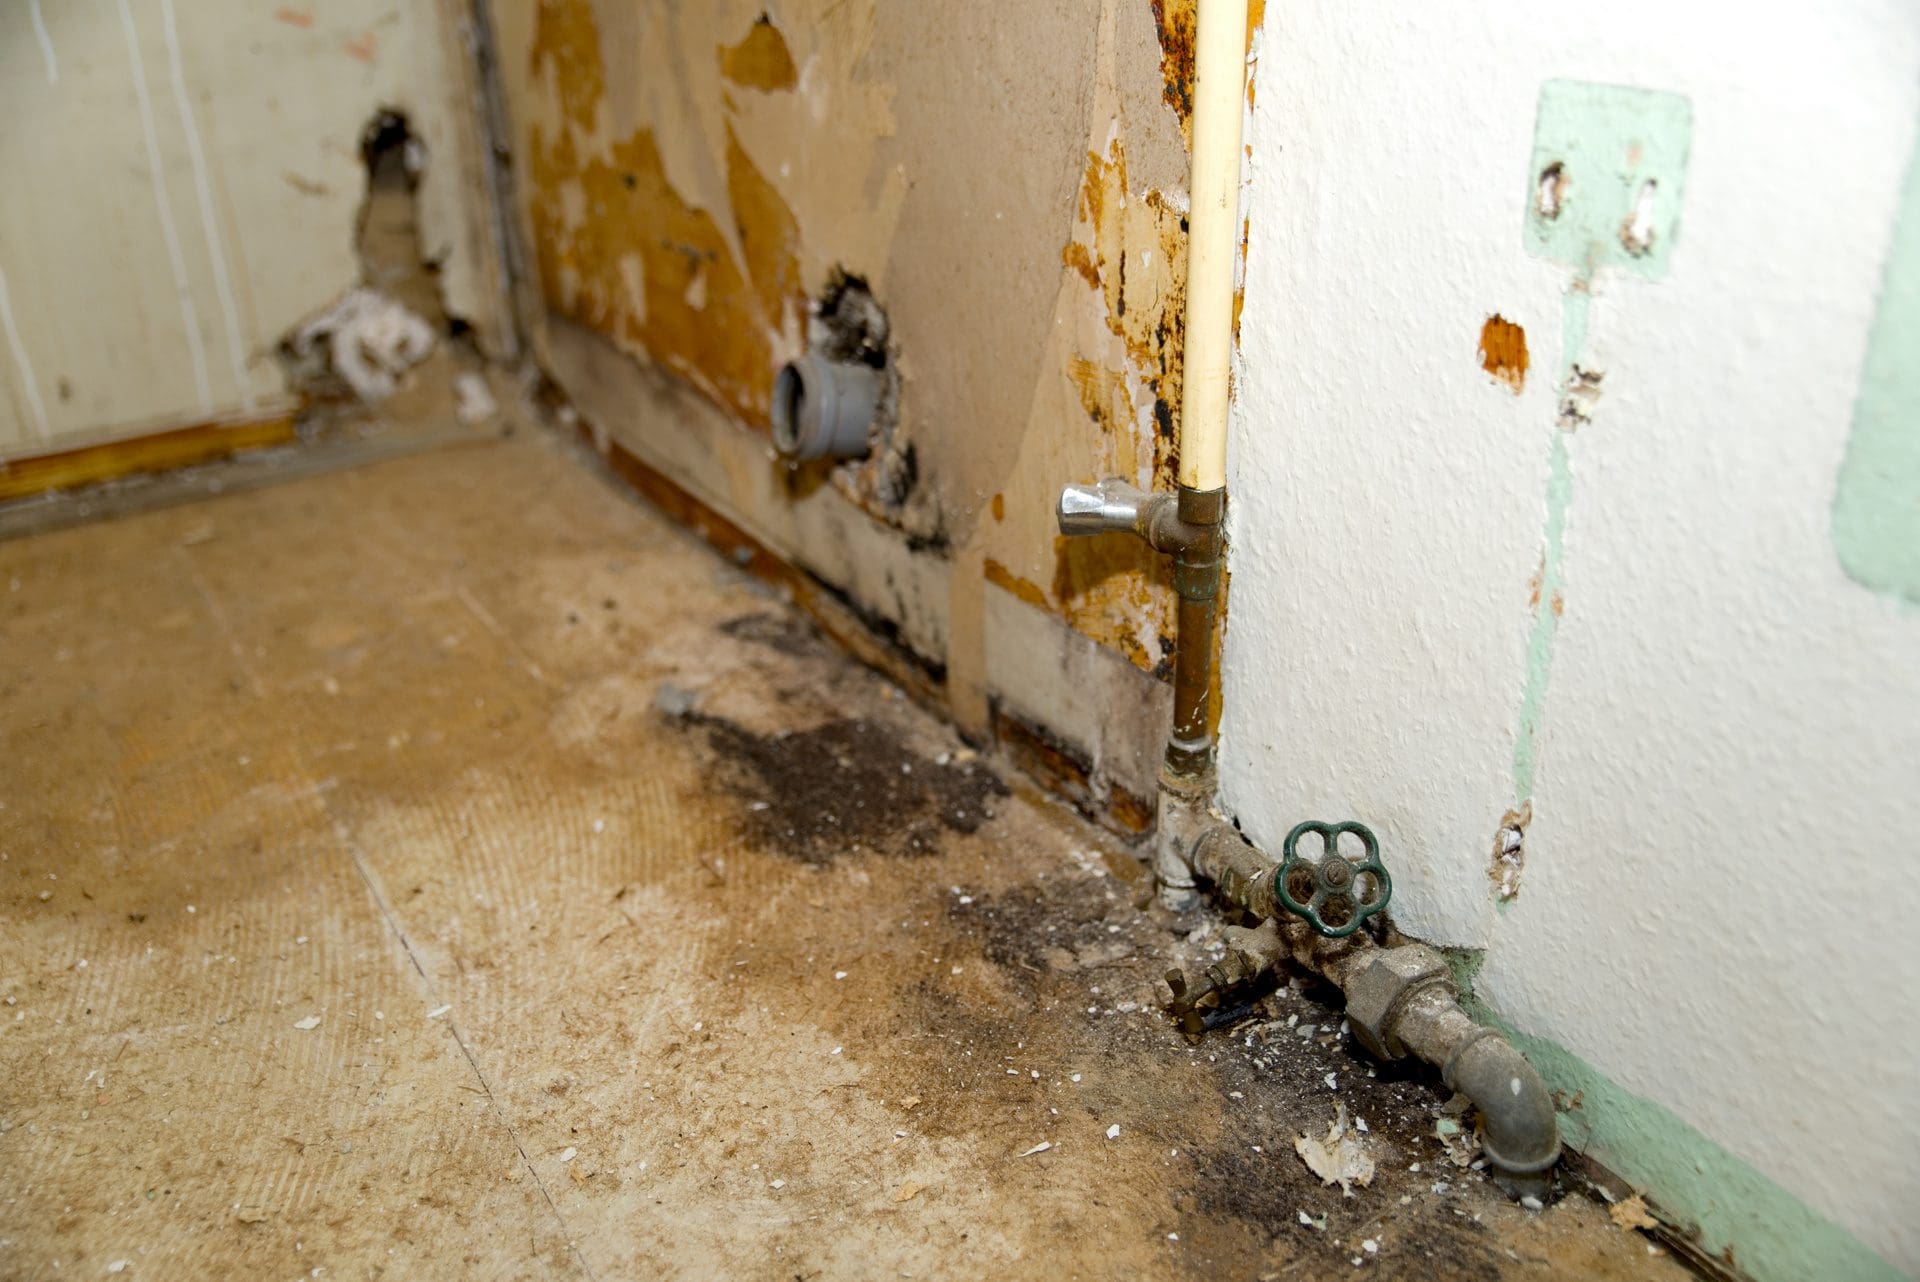 Rohrsanierung nach Wasserschaden | In diesem Haus ist einiges an Kosten zu erwarten ... (© VRD / stock.adobe.com)